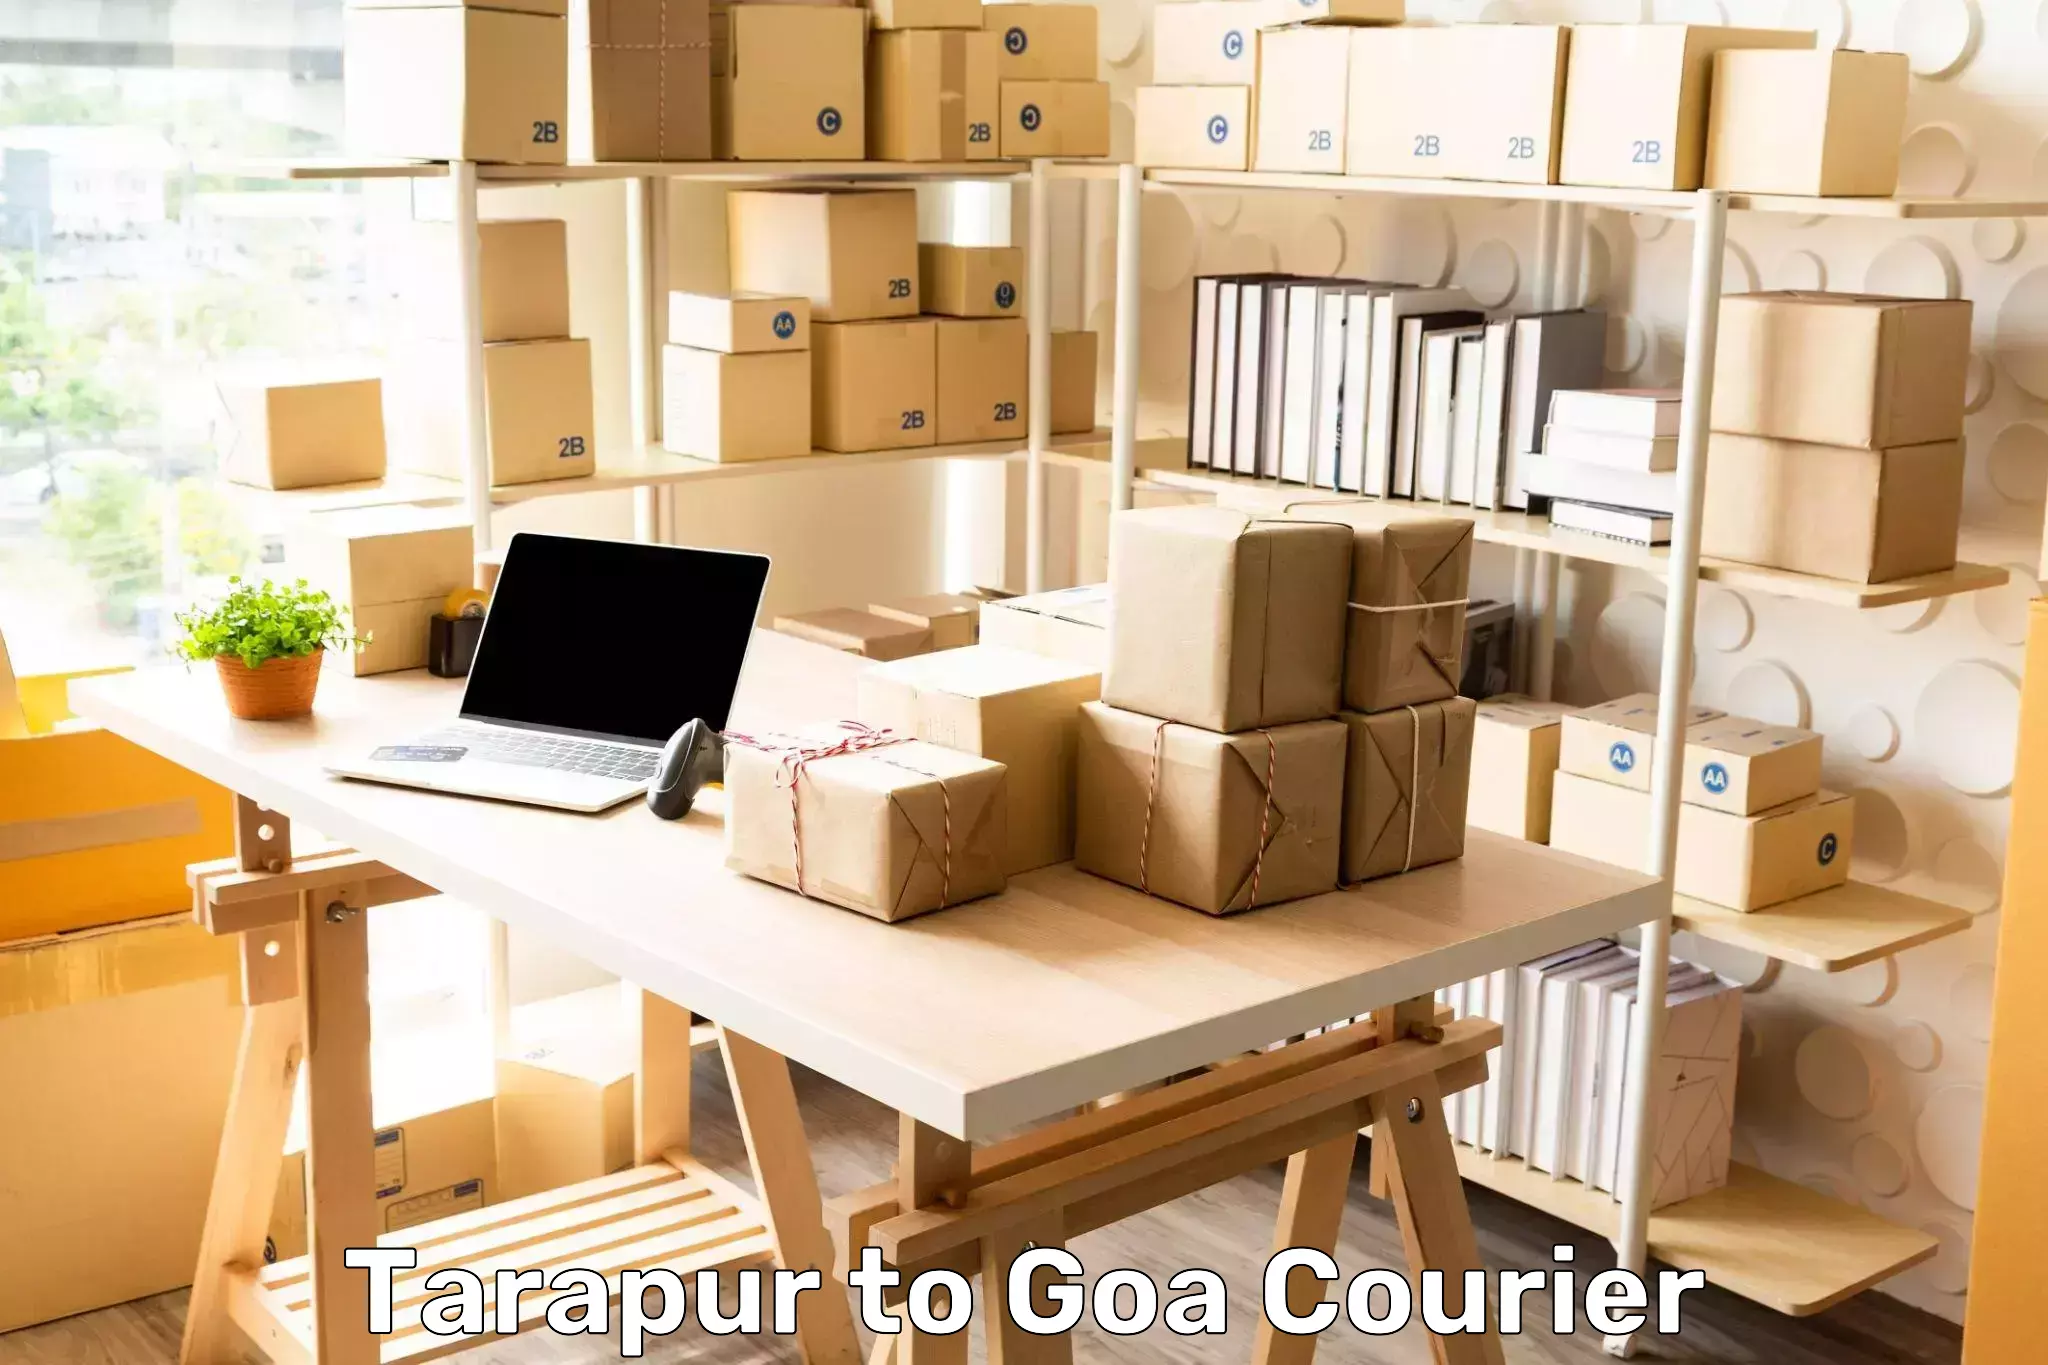 Heavy parcel delivery in Tarapur to Ponda